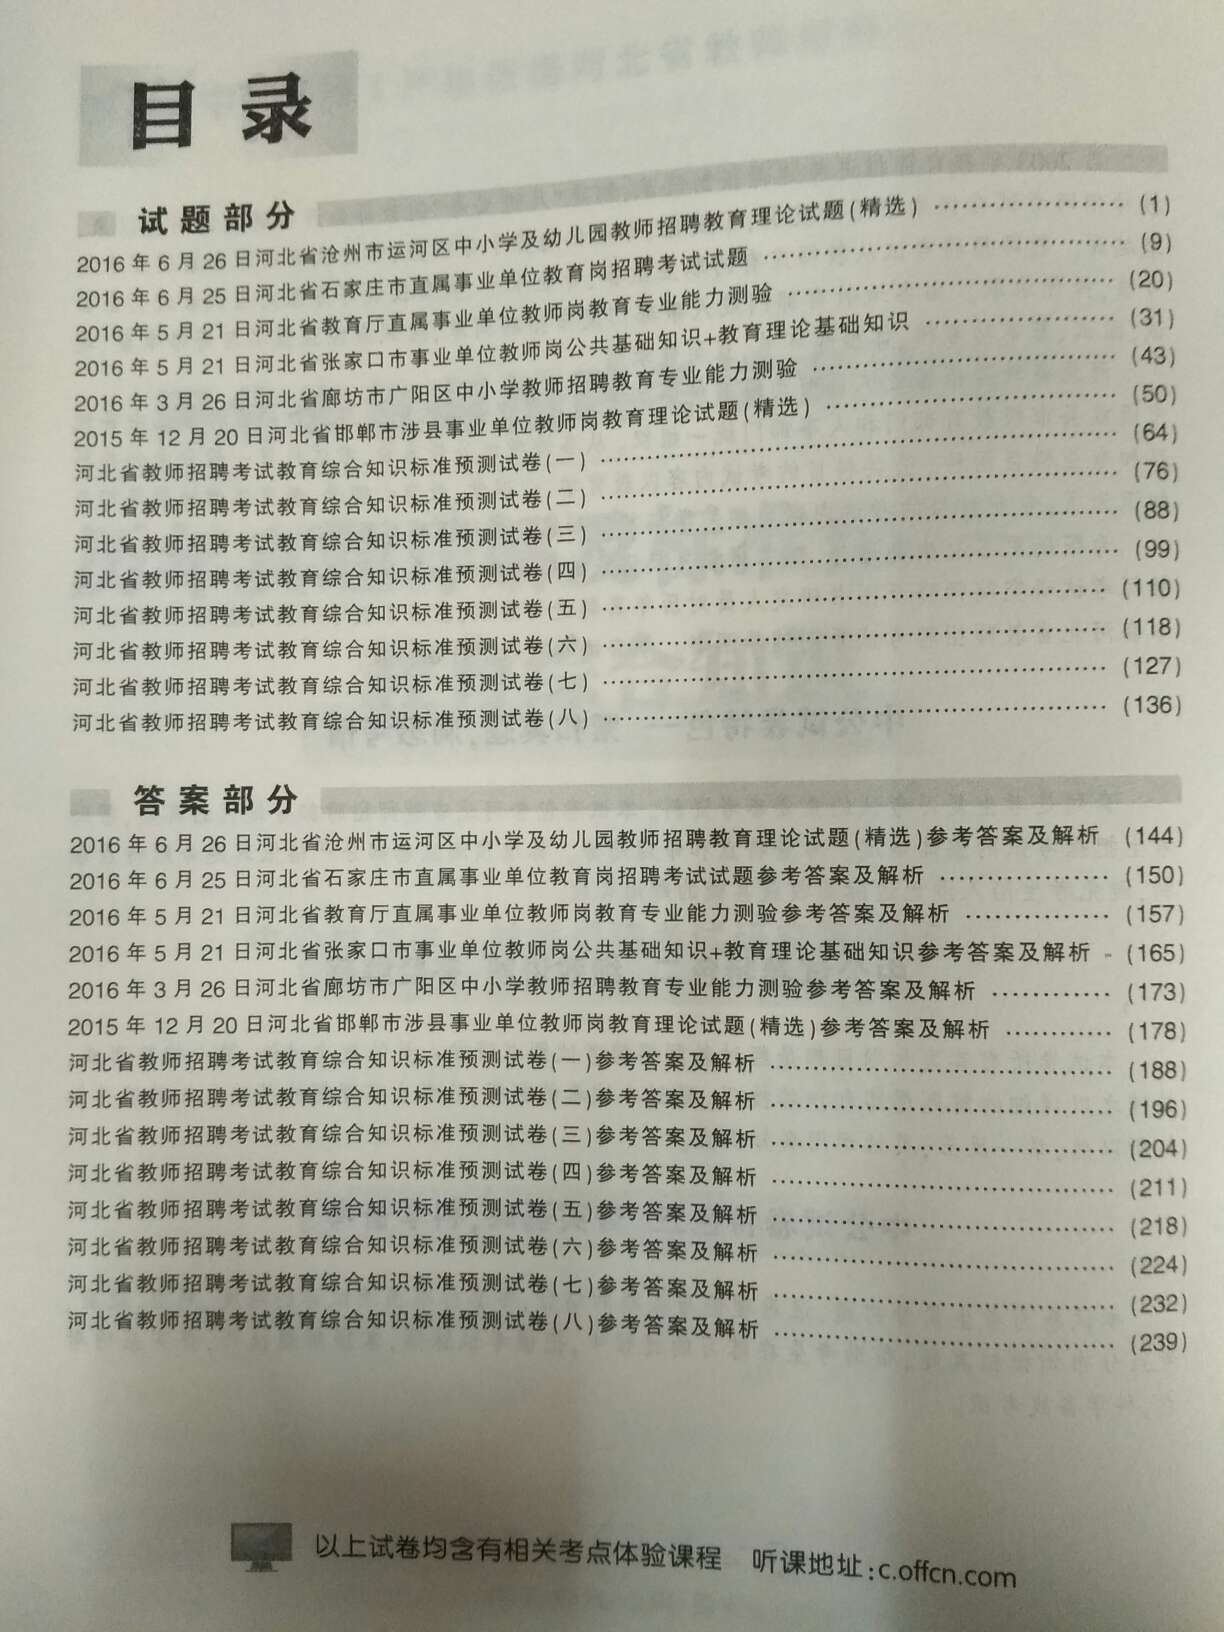 河北省教师招聘考试教育综合知识和历年真题，书很好用，知识点很全面，讲解详细透彻。